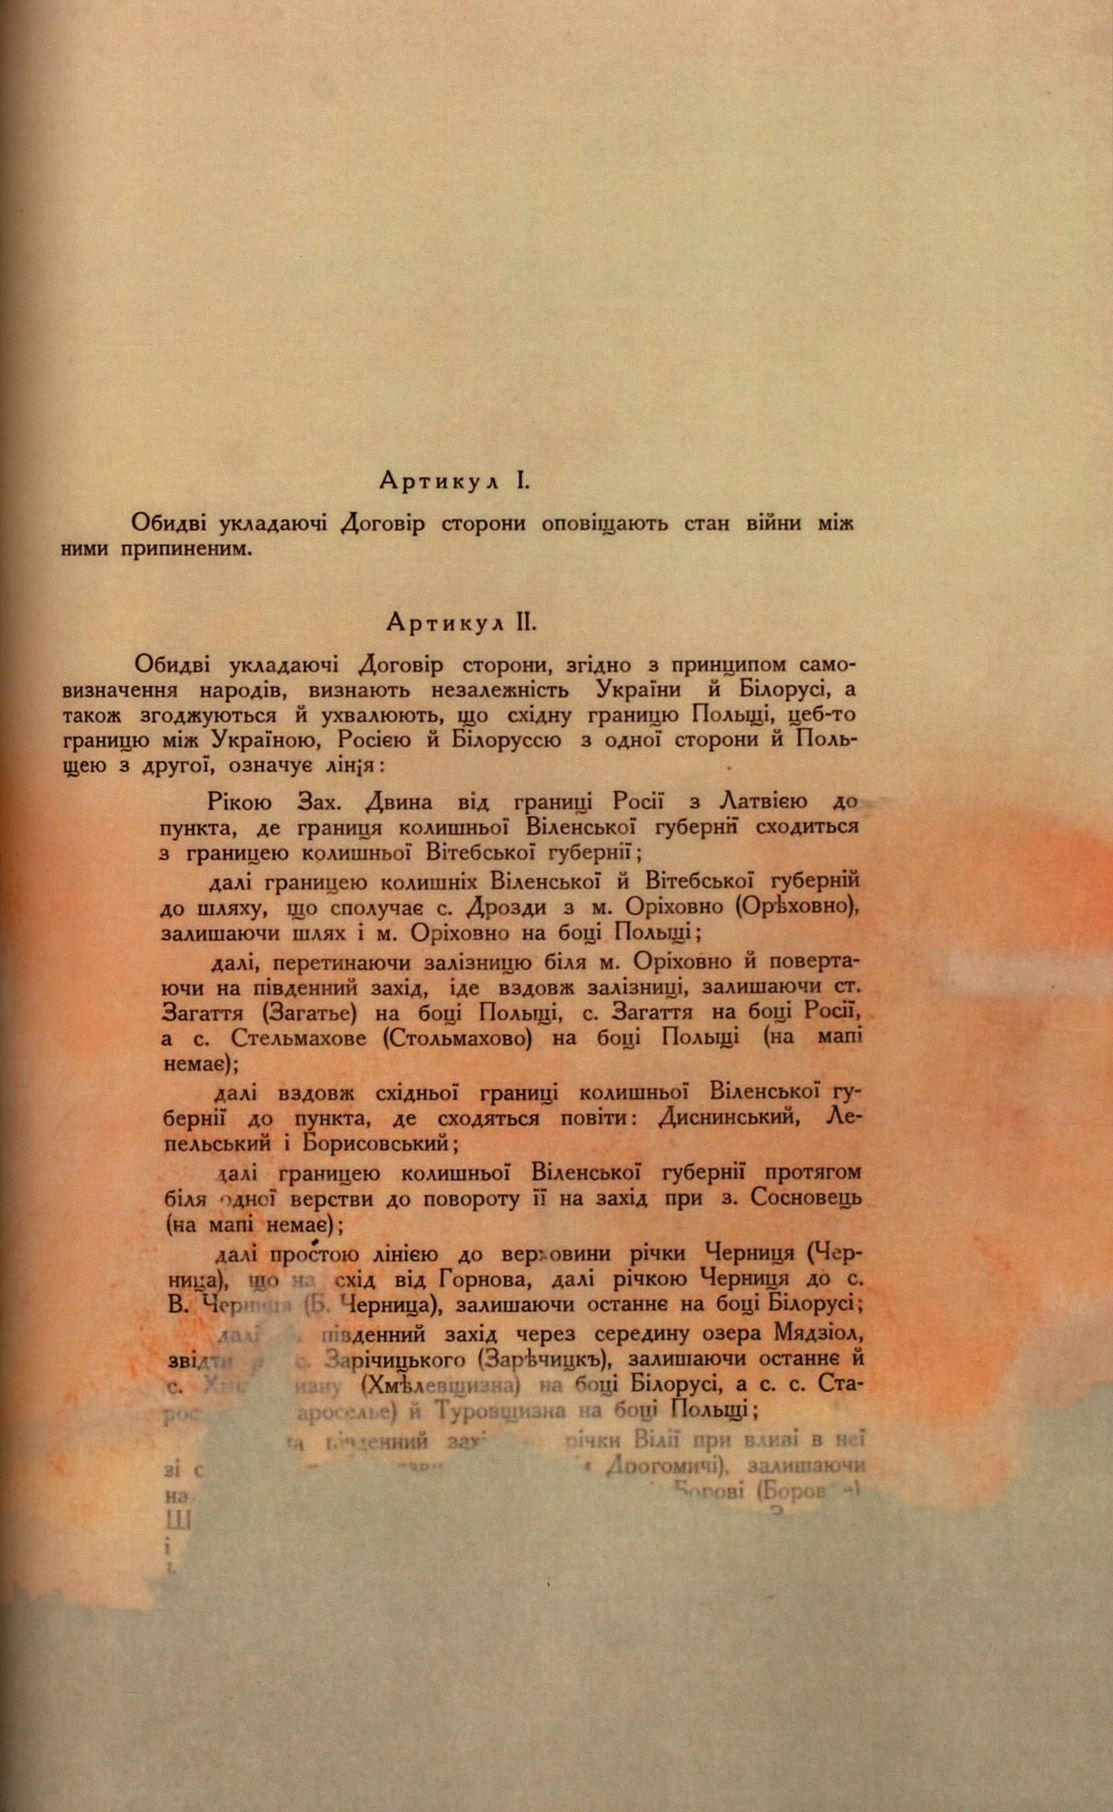 Traktat Pokoju między Polską a Rosją i Ukrainą podpisany w Rydze dnia 18 marca 1921 roku, s. 35, MSZ, sygn. 6739.